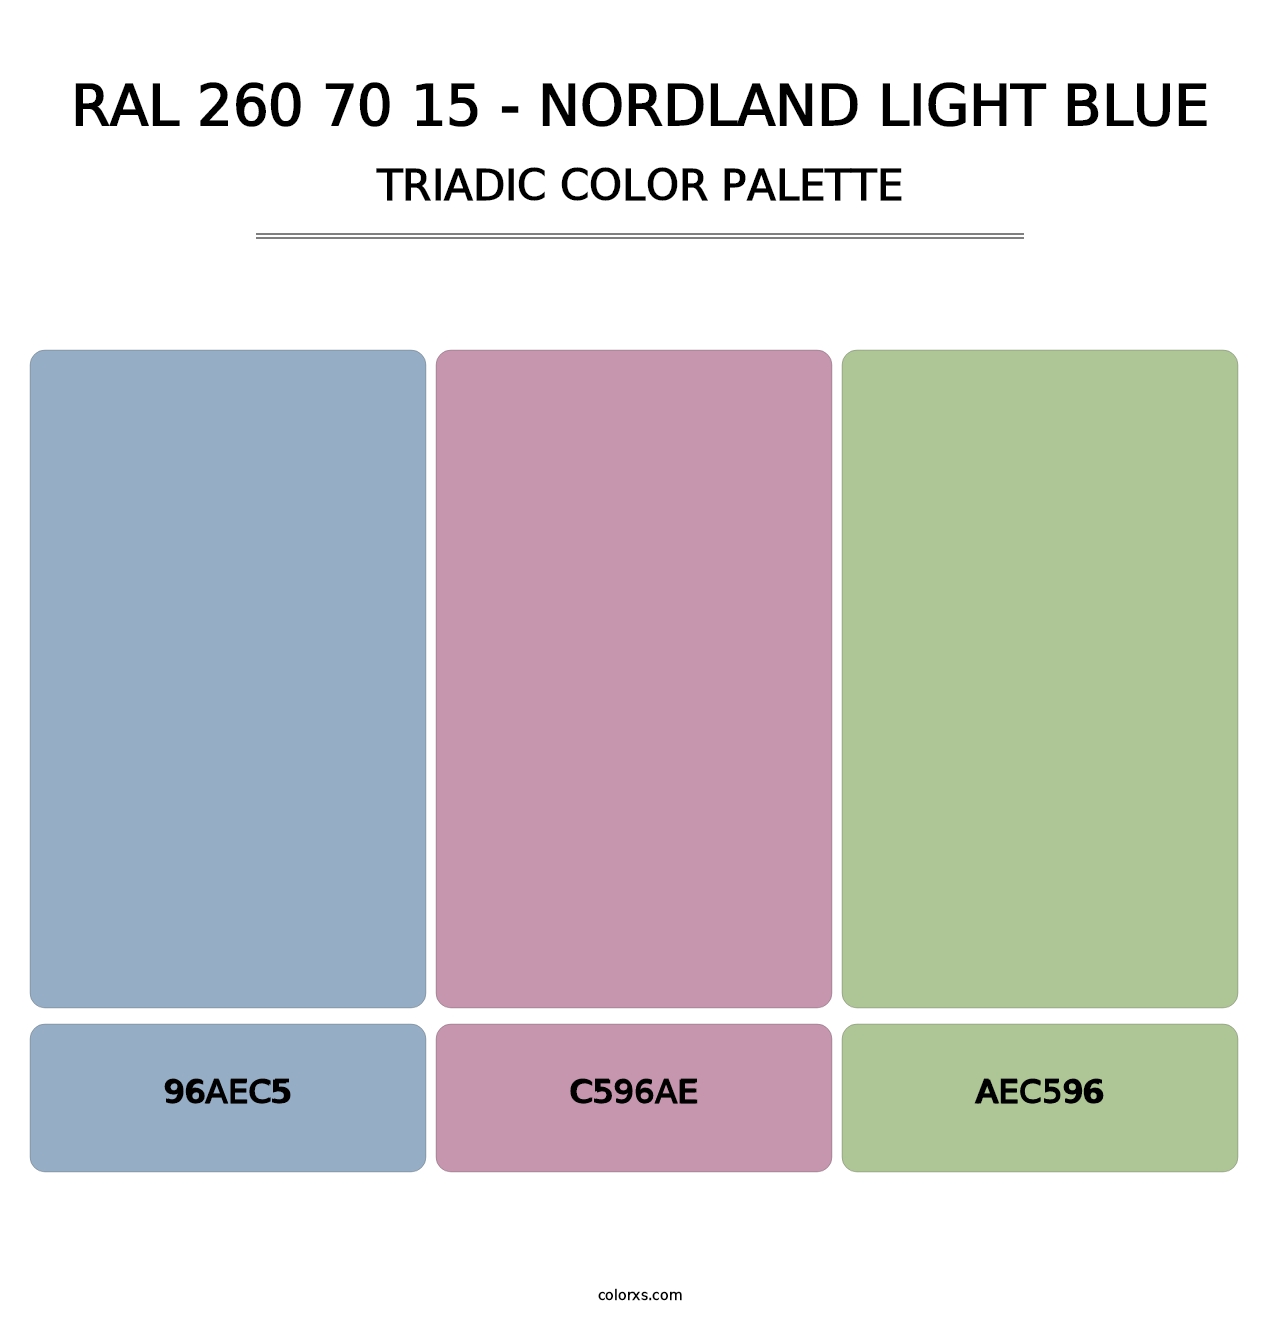 RAL 260 70 15 - Nordland Light Blue - Triadic Color Palette